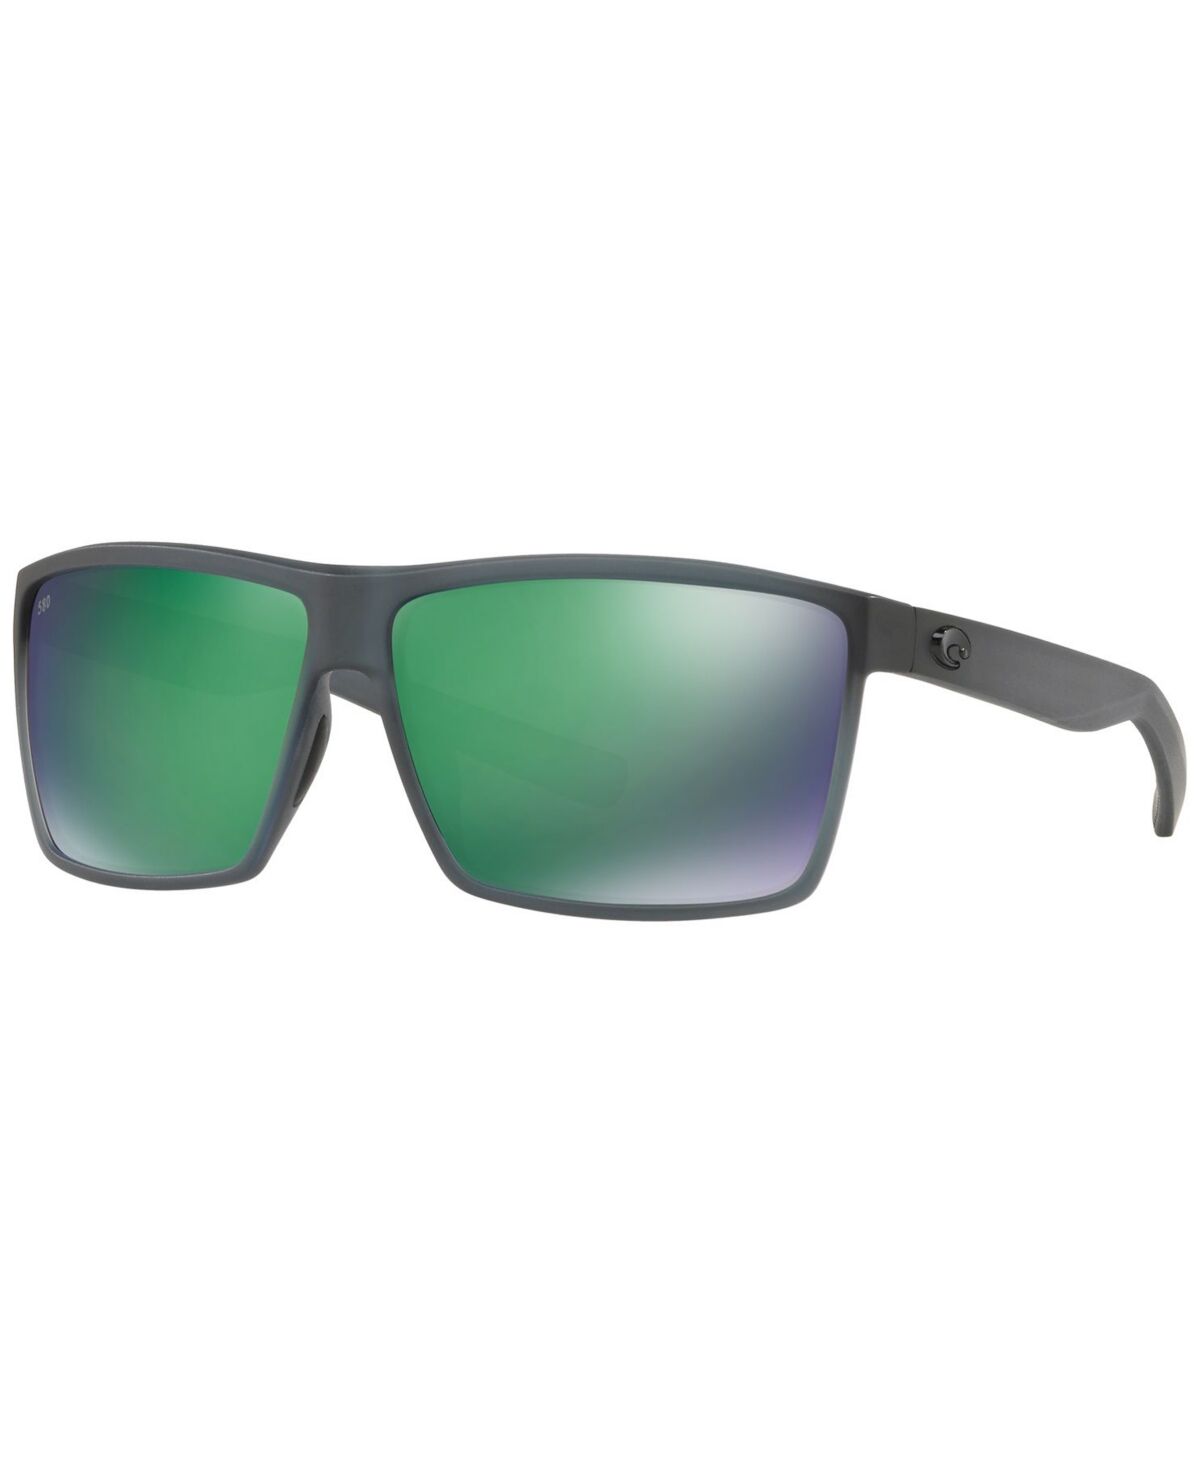 Costa Del Mar Polarized Sunglasses, Rincon 64 - GREY/ GREEN MIRROR